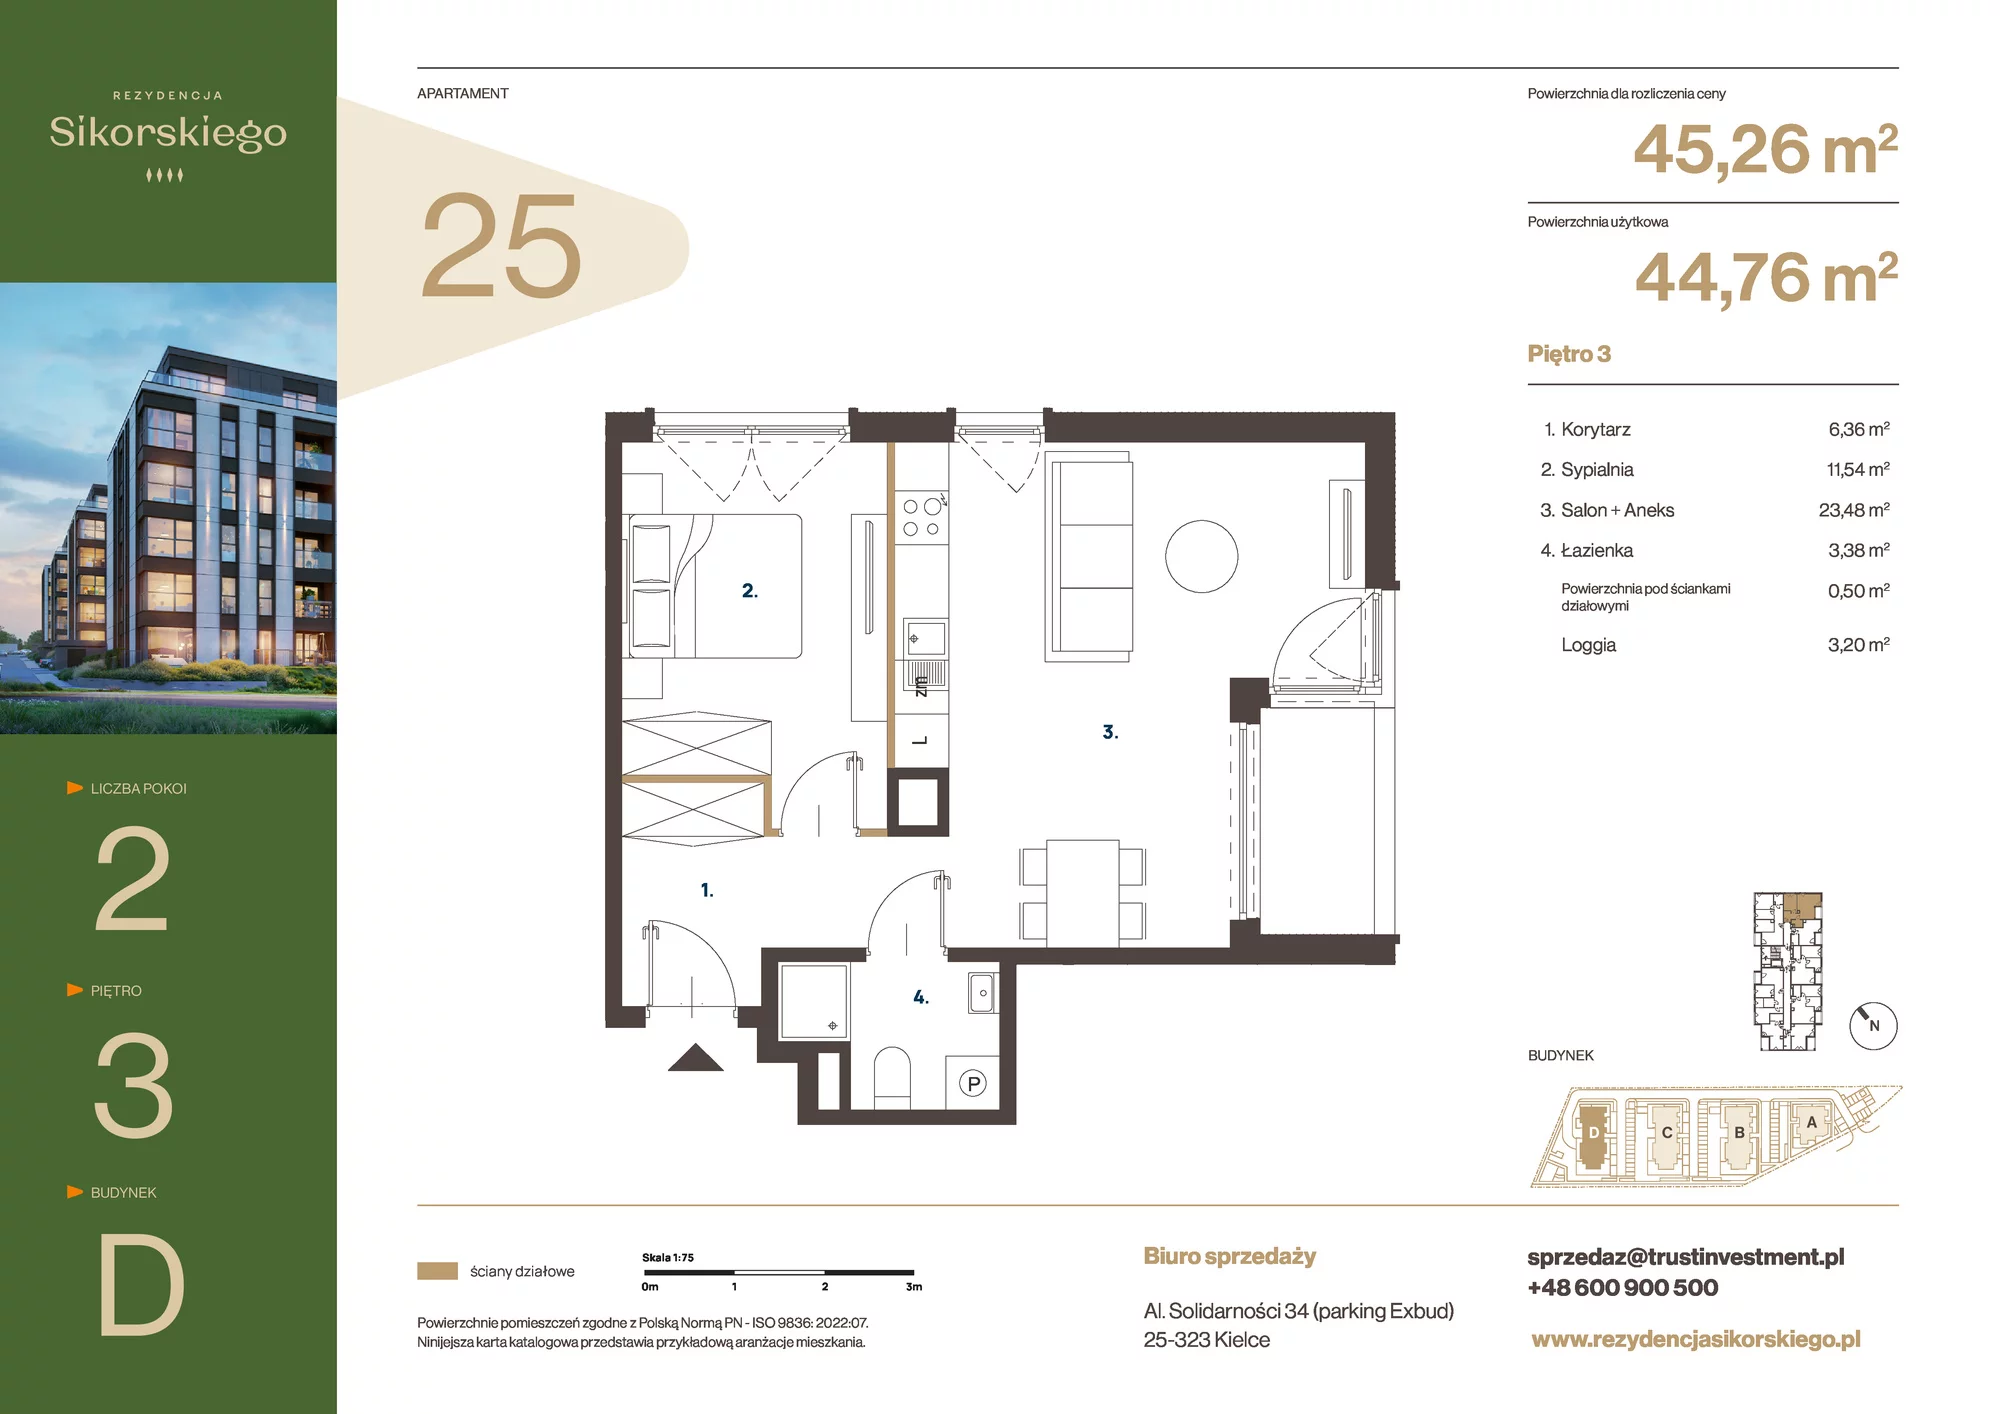 Mieszkanie 45,26 m², piętro 3, oferta nr D25, Rezydencja Sikorskiego, Kielce, Na Stoku, ul. Sikorskiego